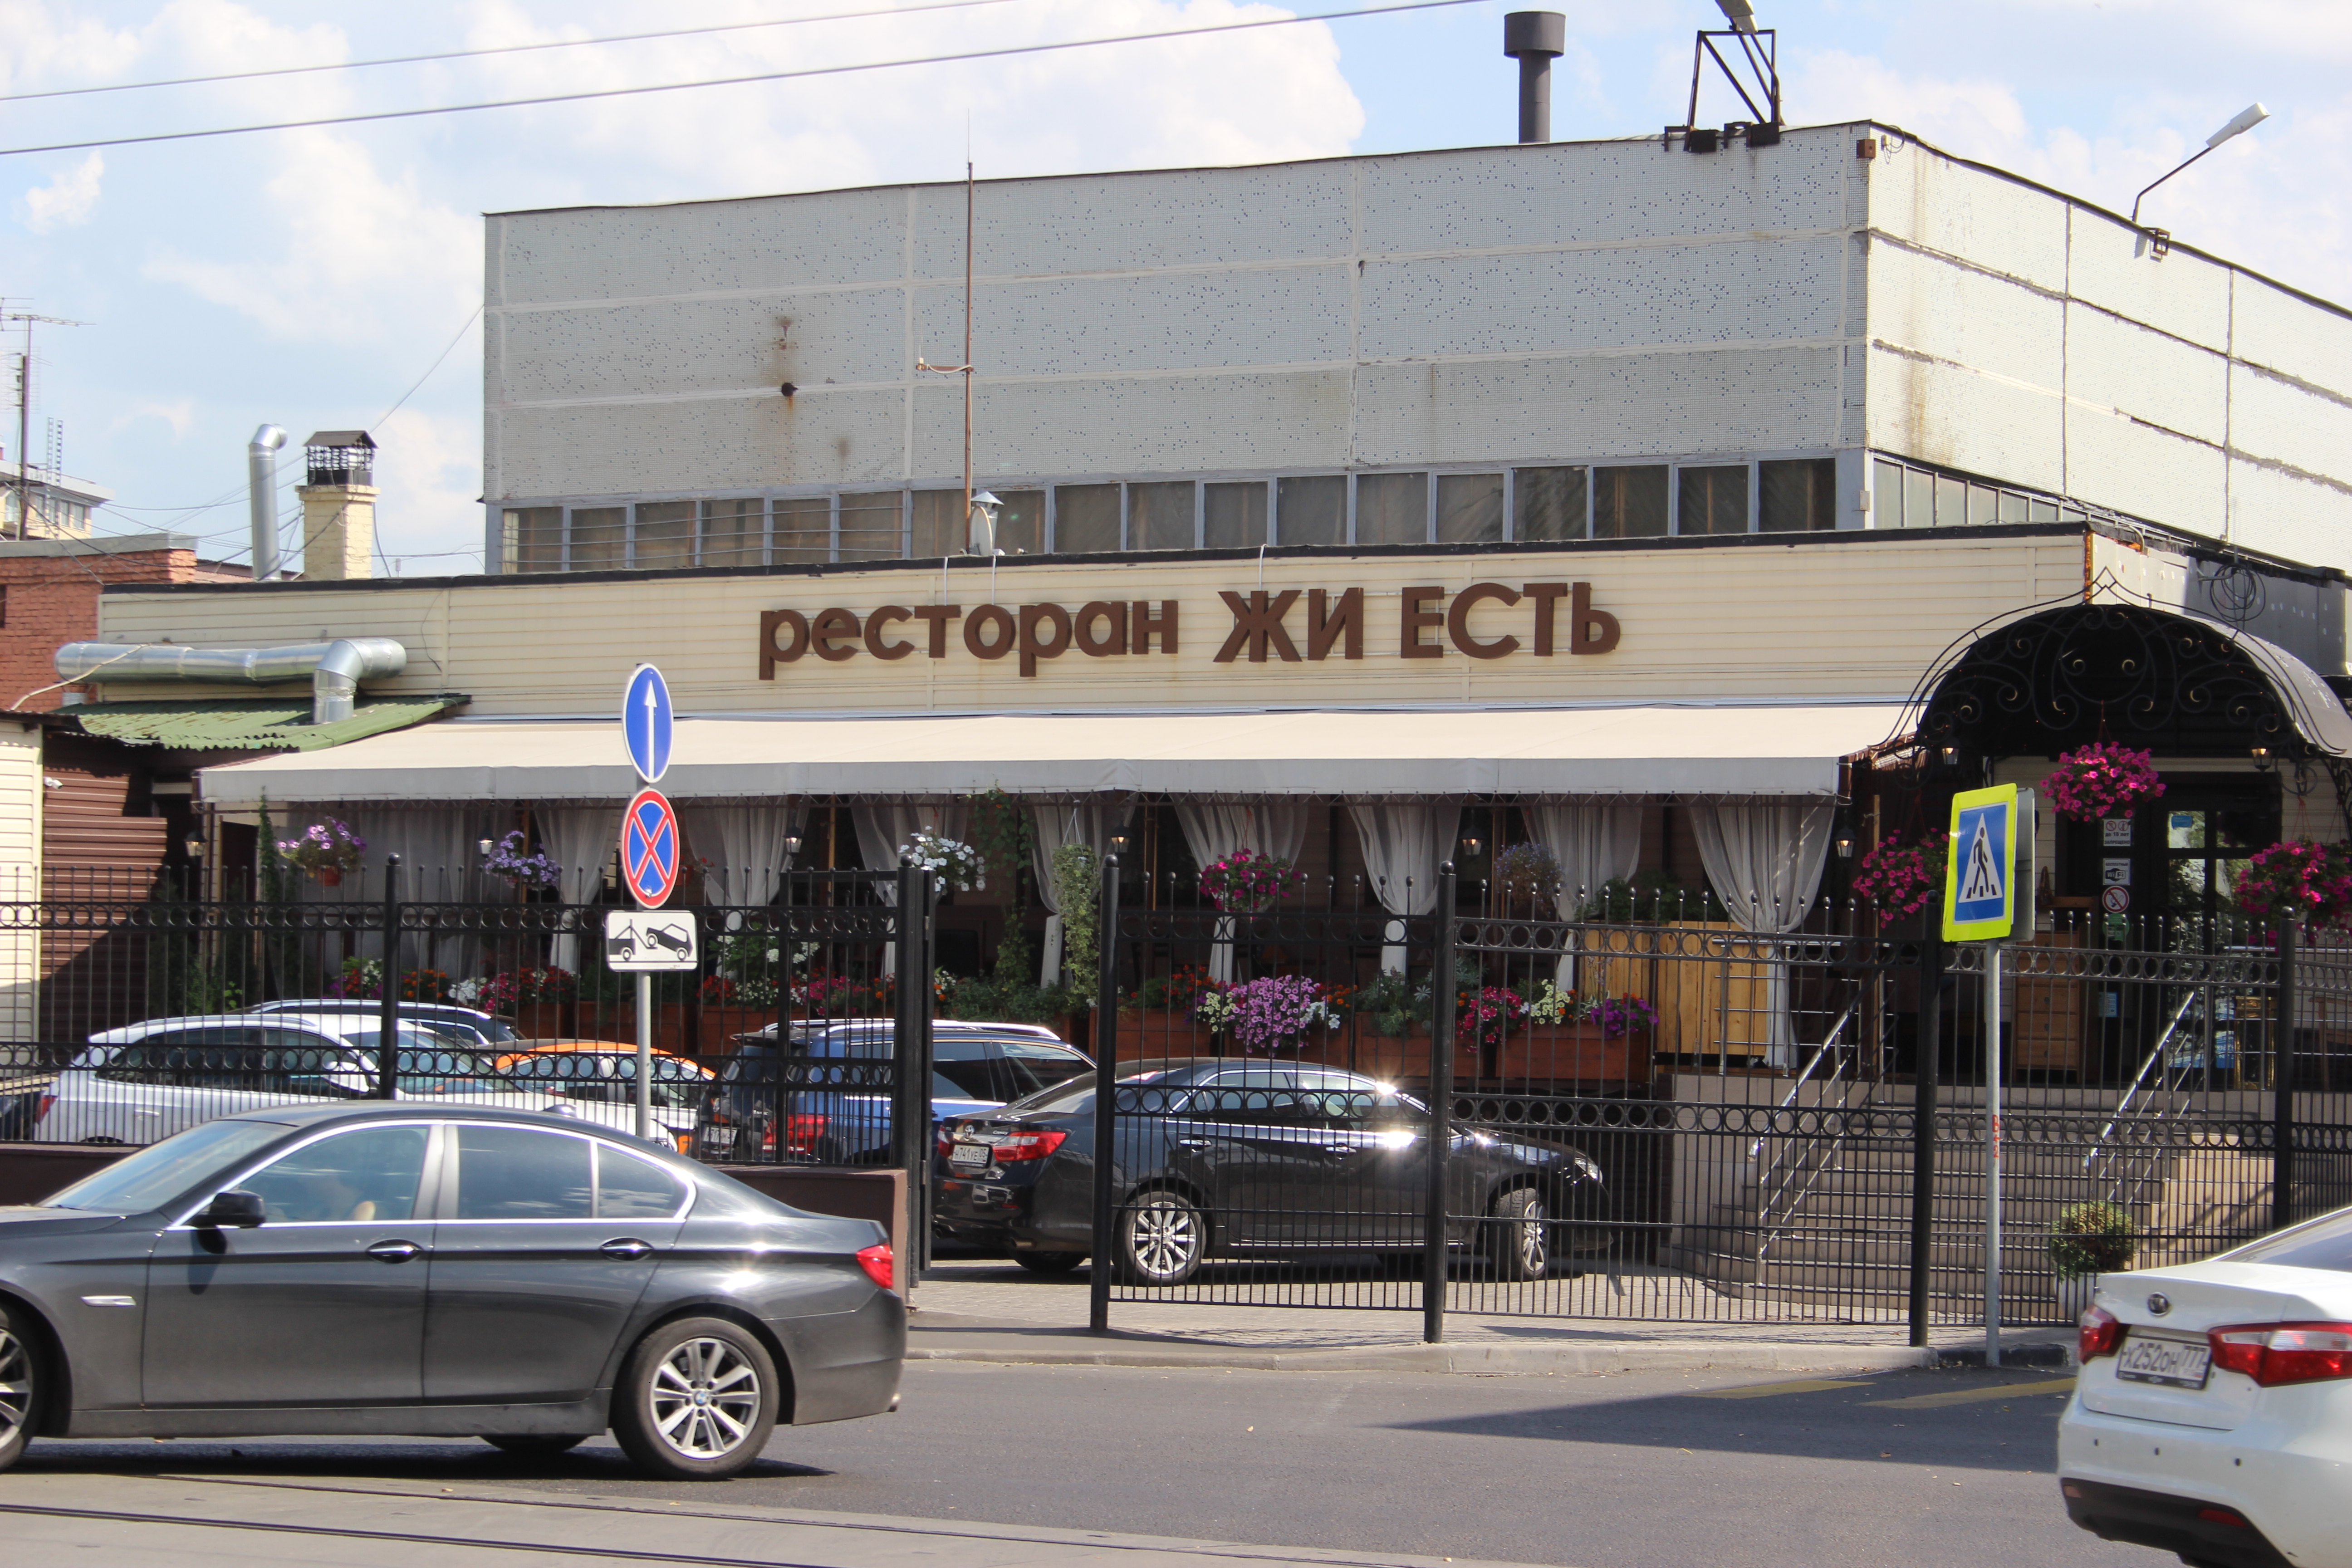 Ресторан на улице орджоникидзе. Ресторан жи есть на Ленинском проспекте. Ресторан жи есть метро Ленинский проспект. Ресторан жи есть Орджоникидзе 11. Ресторан жи есть в Москве меню.